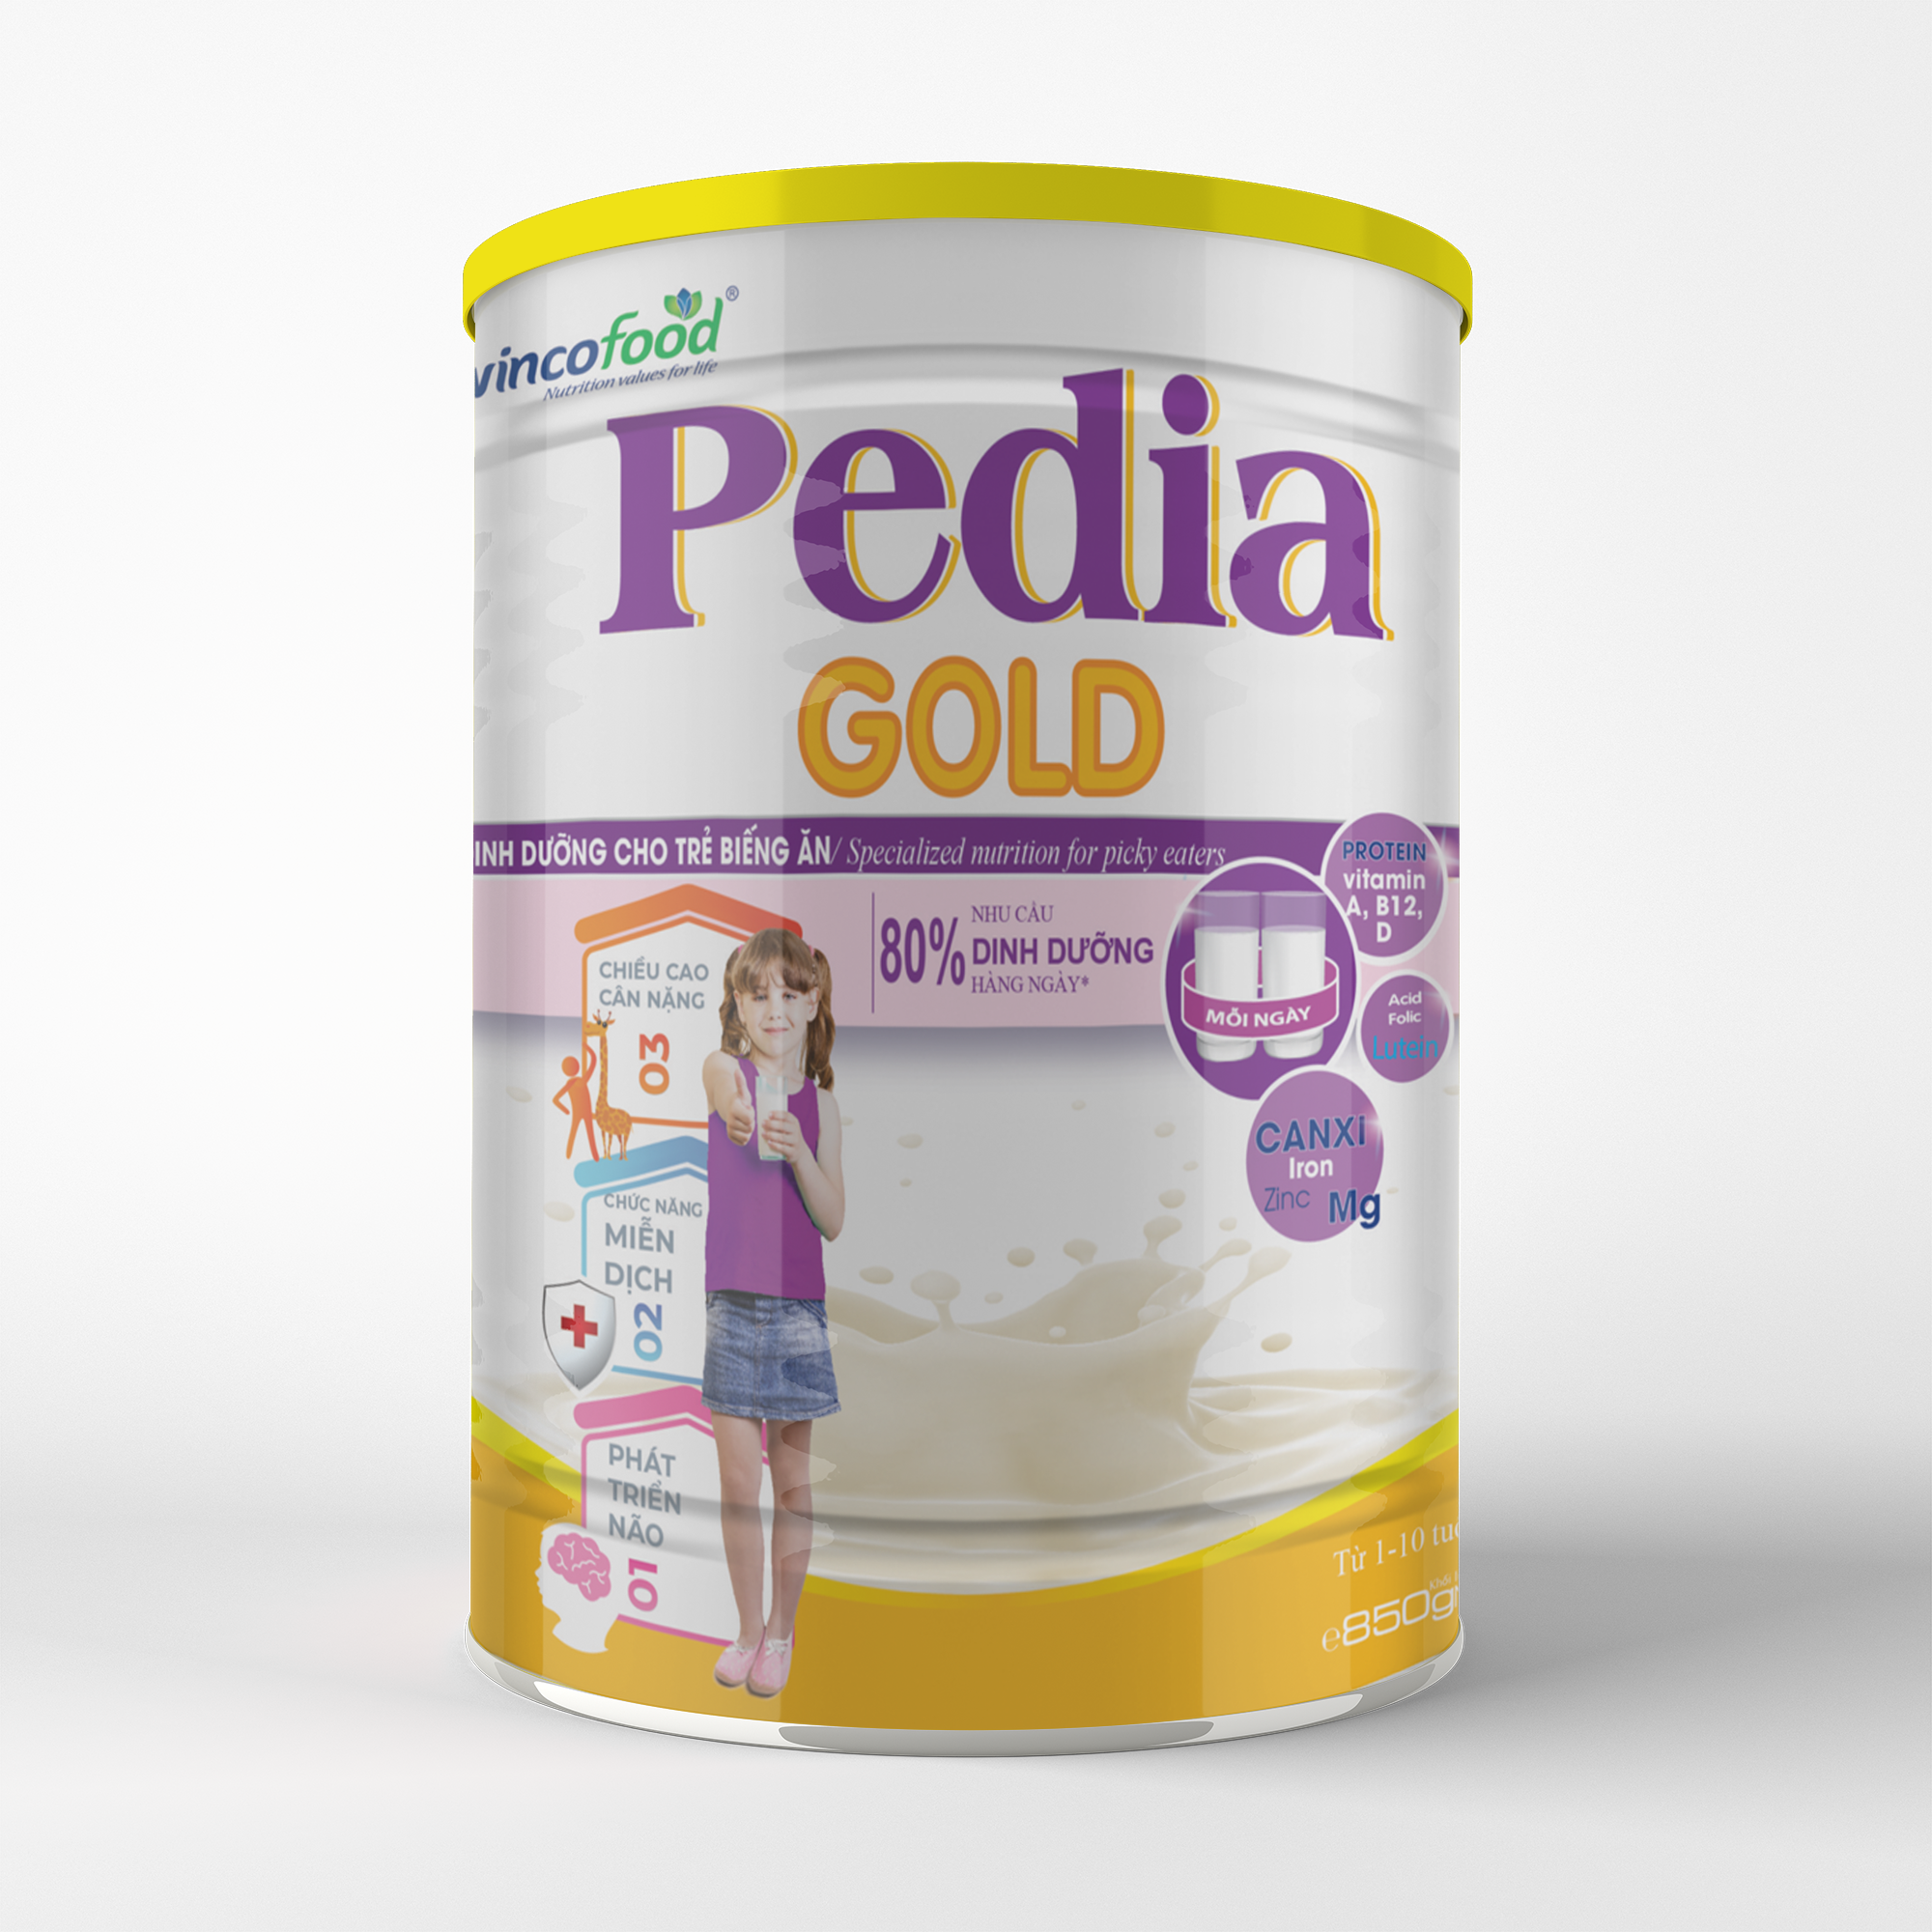 Sữa non Wincofood Pedia Gold 850g chăm sóc trẻ biếng ăn